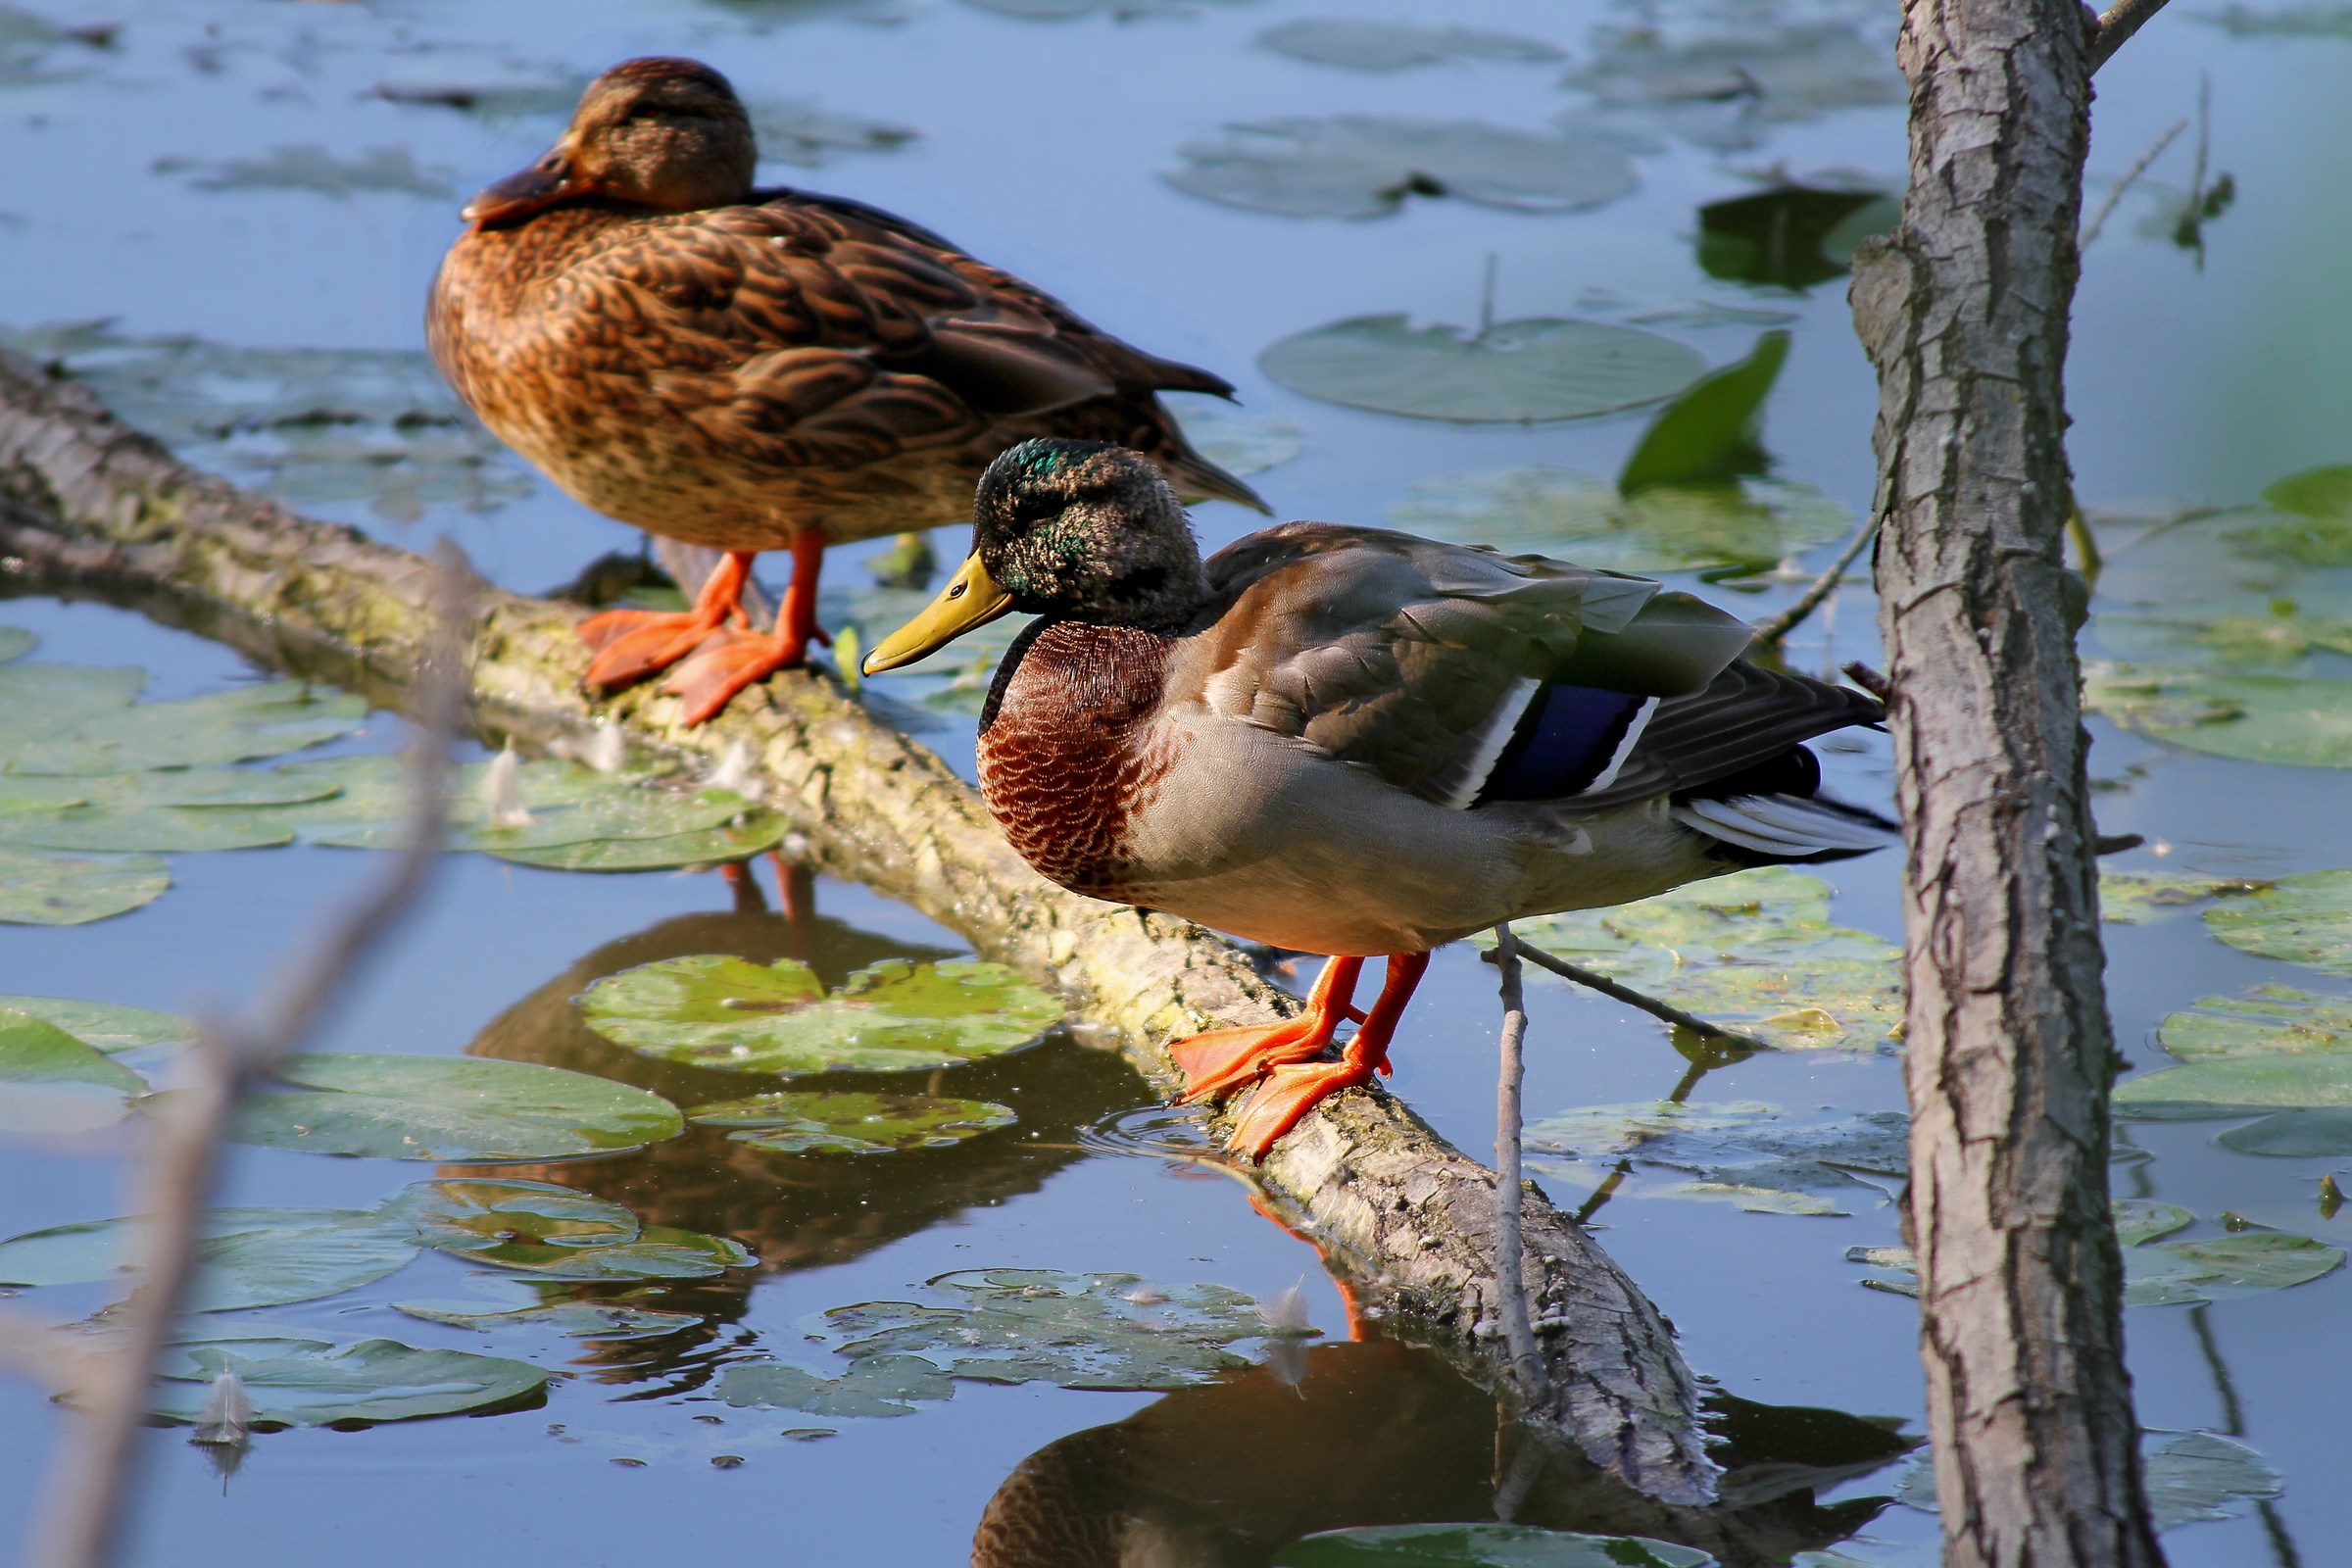 Torrile Oasis: Pair of ducks...